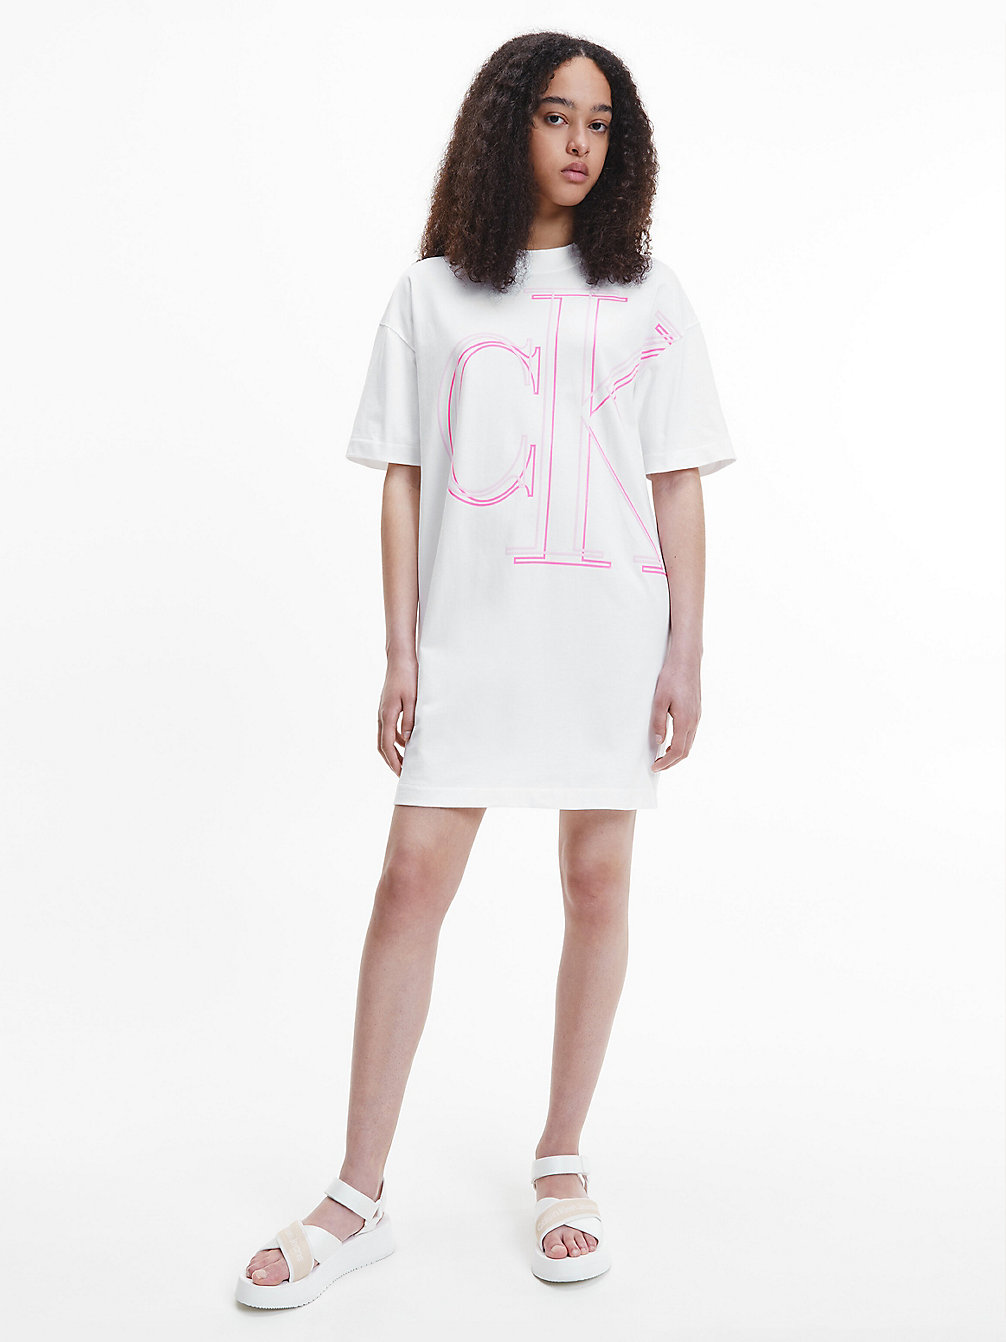 BRIGHT WHITE > Swobodna Sukienka Typu T-Shirt Z Monogramem > undefined Kobiety - Calvin Klein